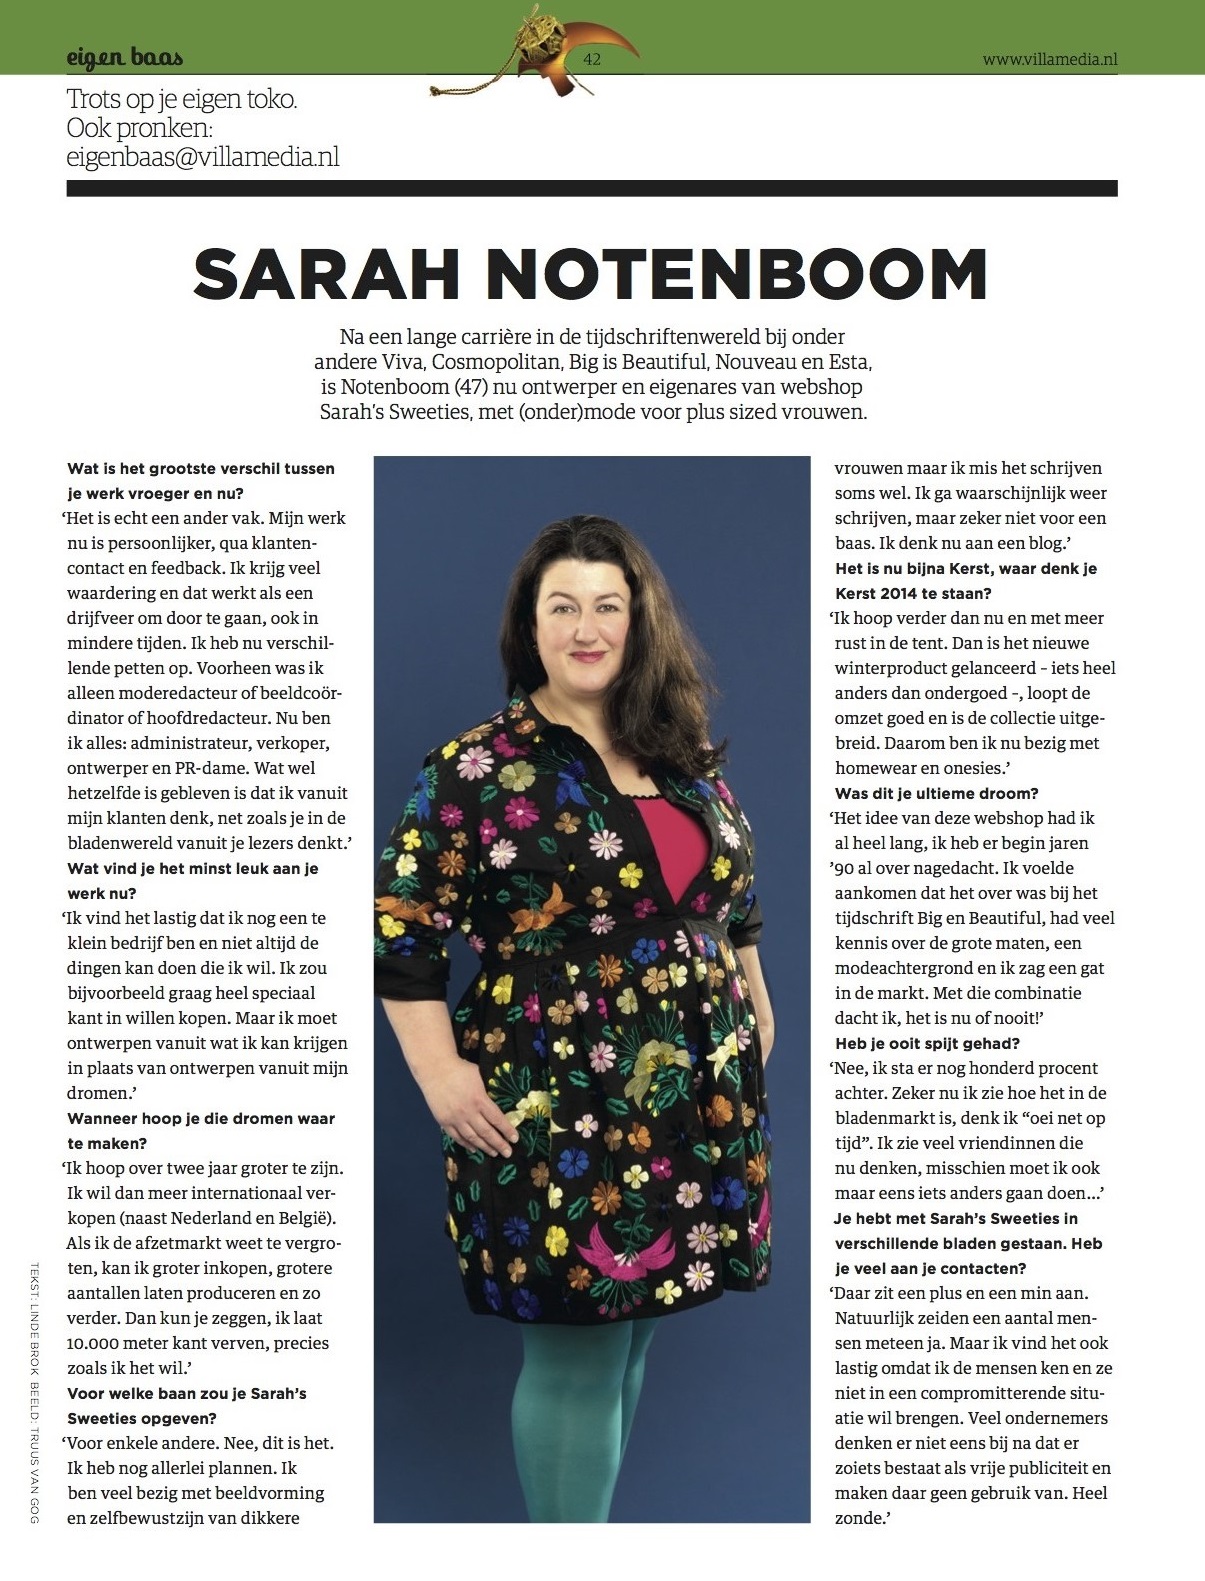 Interview Sarah Notenboom over ondernemerschap in een serie over bladenmakers die iets anders zijn gaan doen in het blad Villamedia december 2013